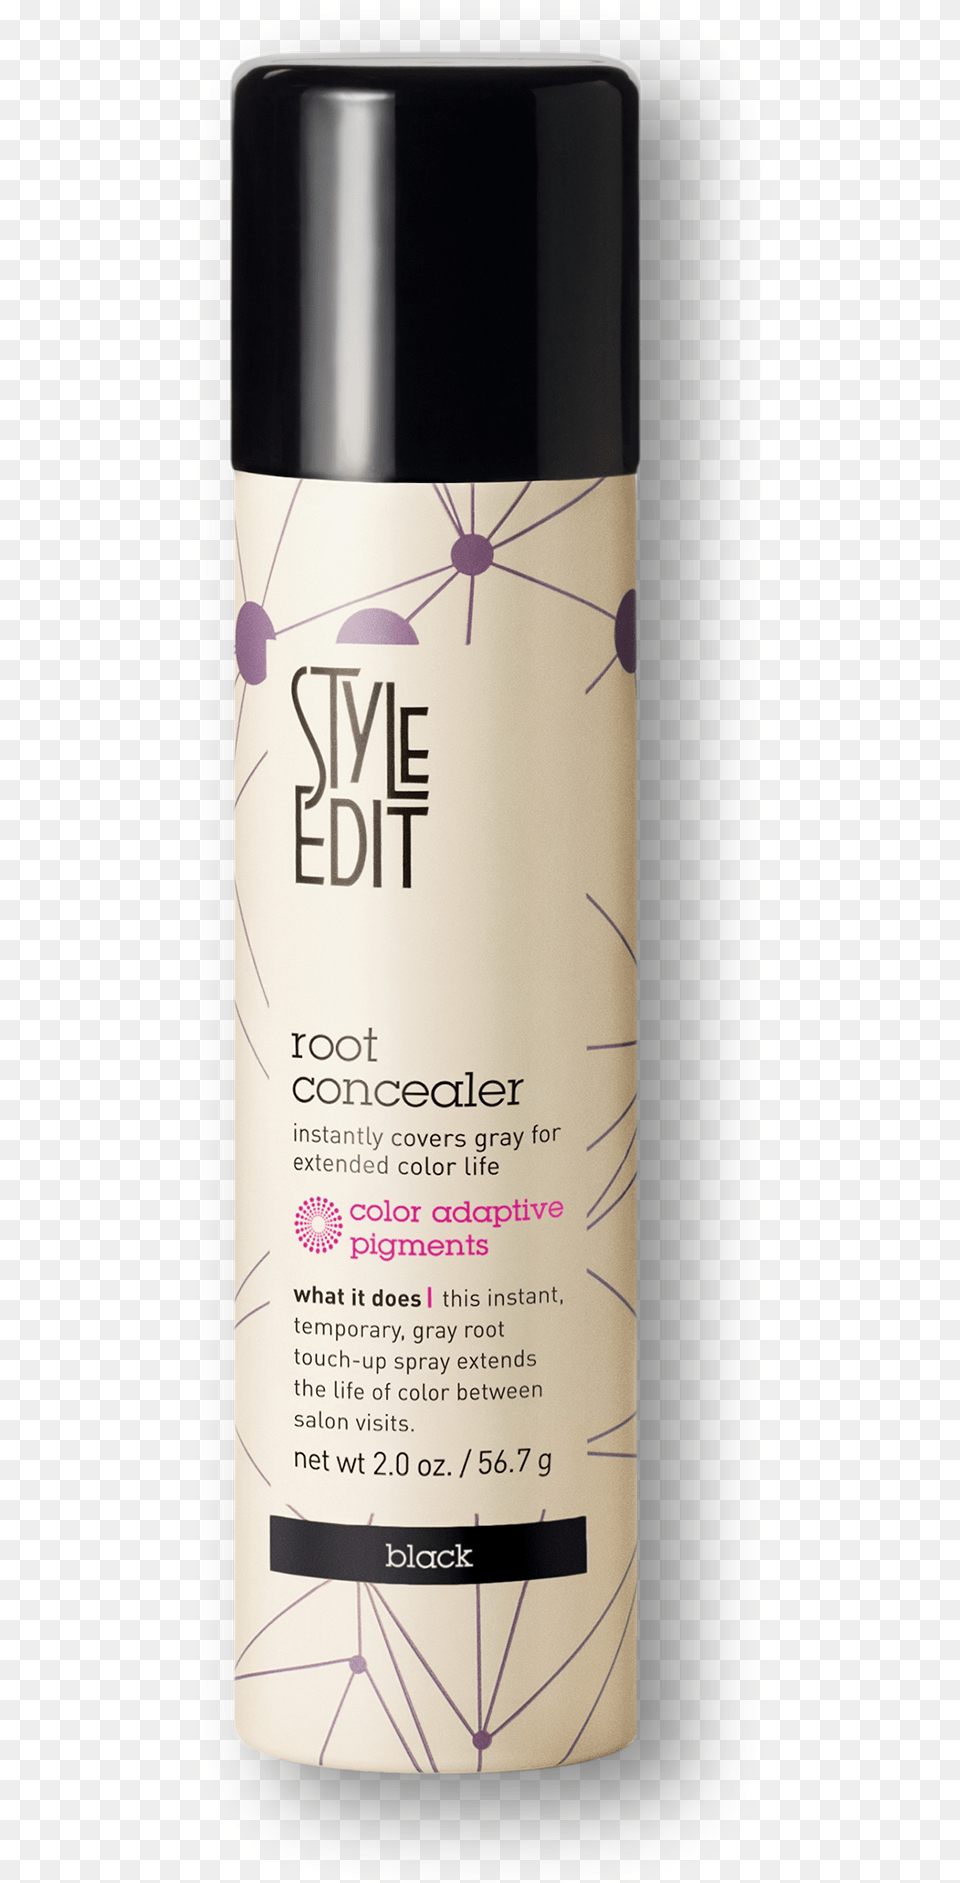 Style Edit Root Concealer Dark Brown, Cosmetics, Deodorant, Bottle Png